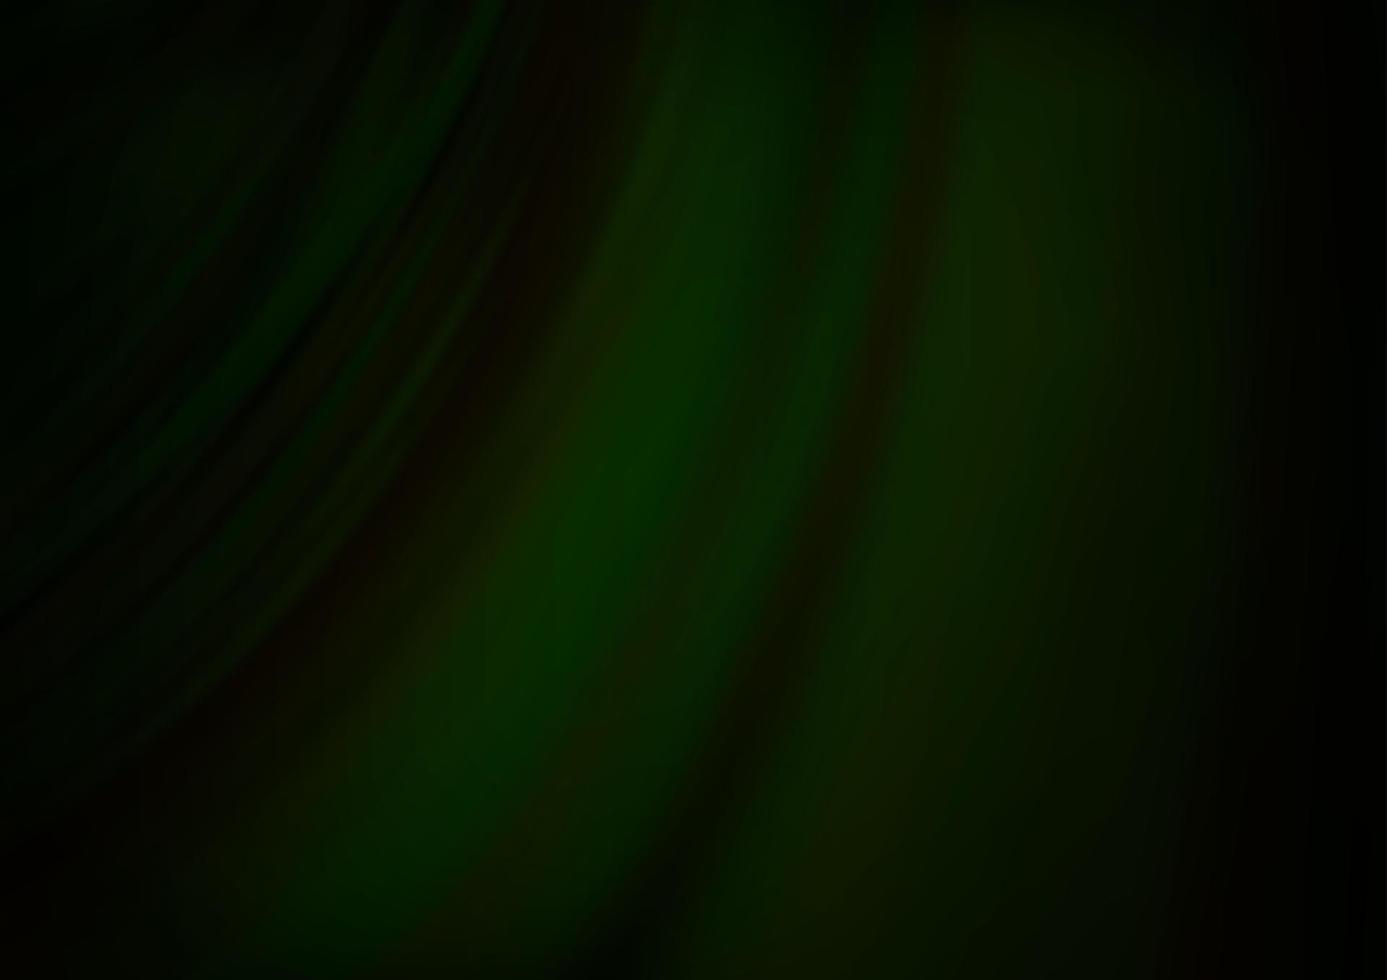 sfondo vettoriale verde scuro con cerchi curvi.